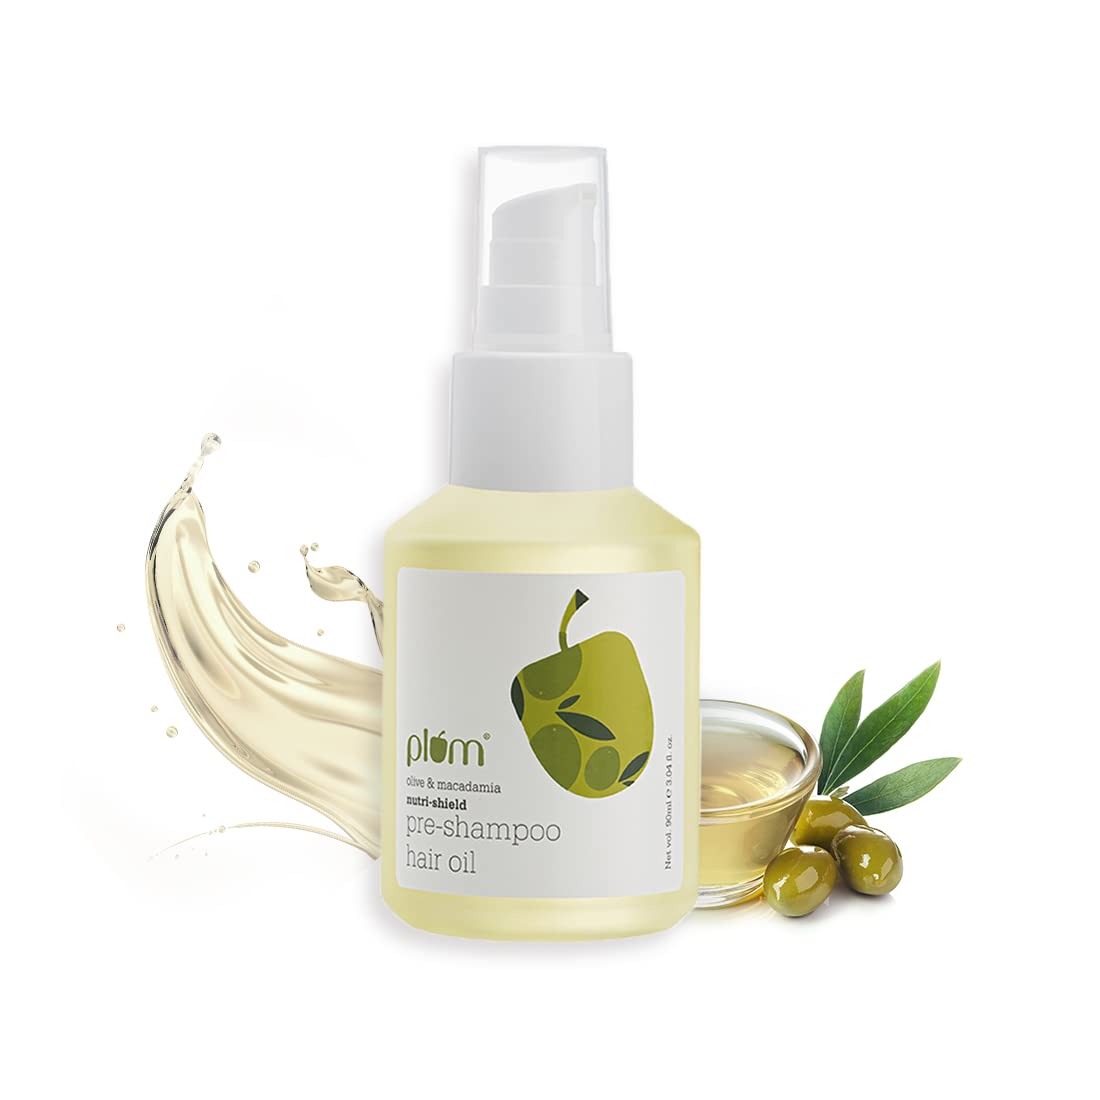 Plum Olive & Macadamia Nutri-Shield Pre-Shampoo Hair Oil 